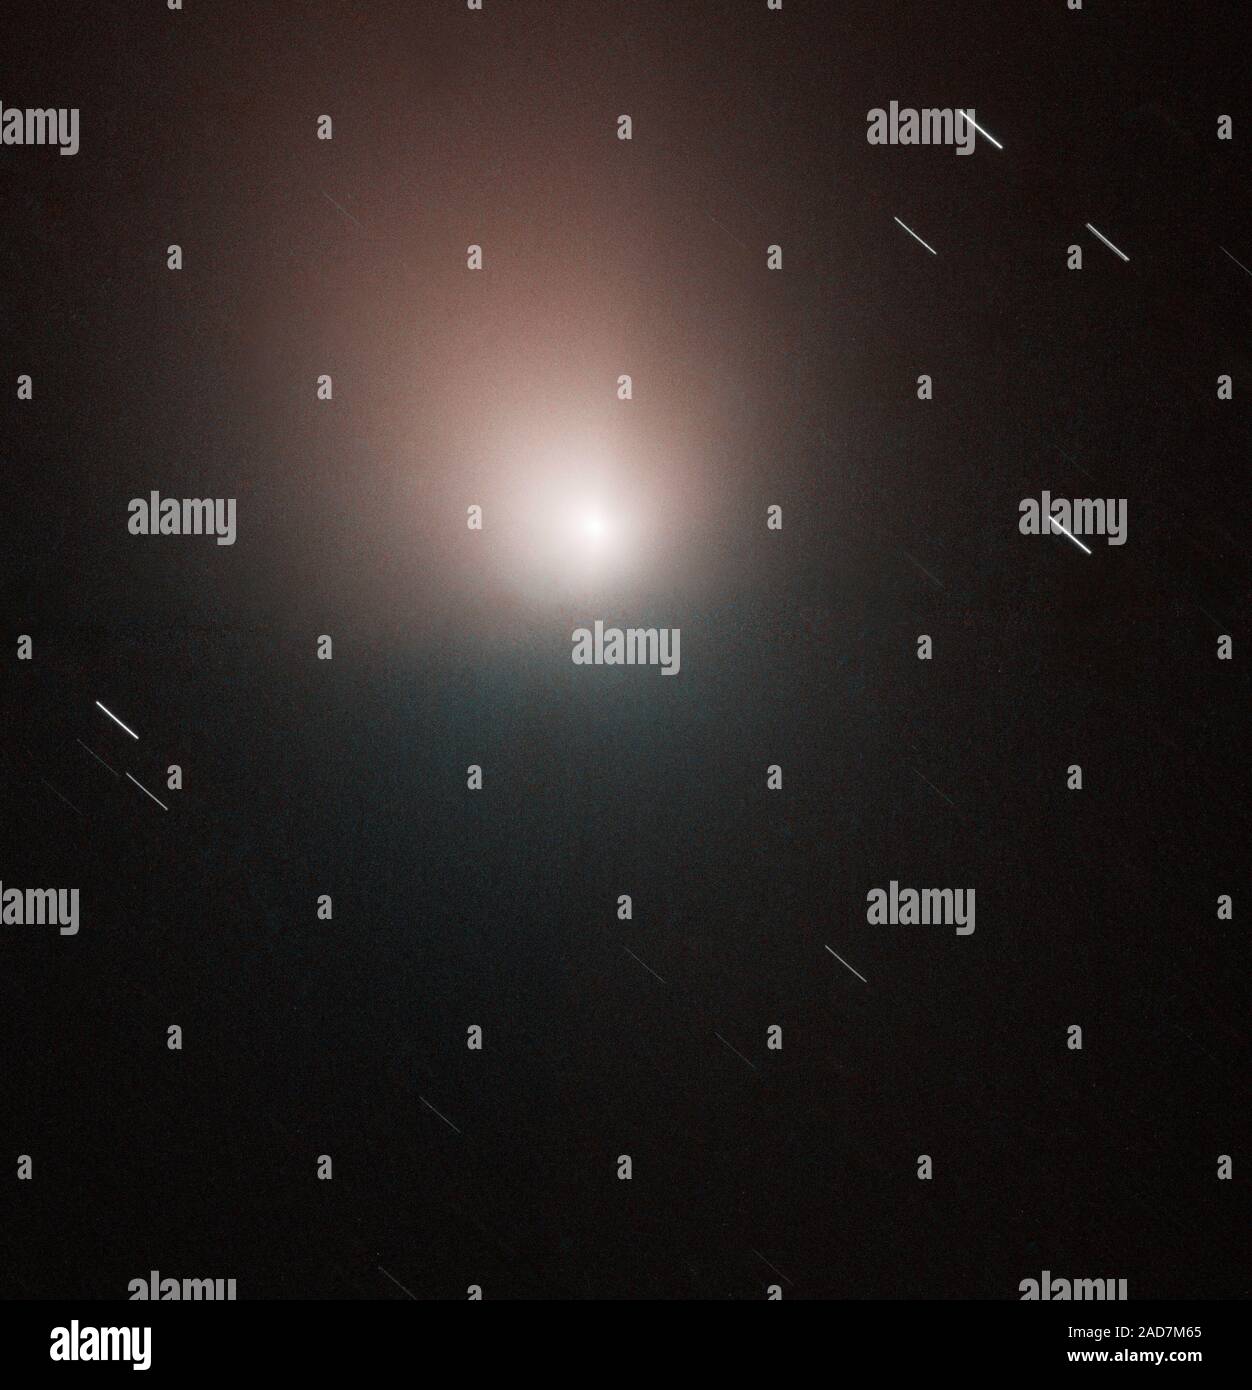 Die NASA-Hubble-Weltraumteleskop aufgeschnappt hat, ein Bild des Kometen 9P/Tempel 1 nur wenige Tage, bevor die Deep Impact Sonde zu Rendezvous mit dem Kometen geplant. Dieses Bild, am Morgen des 30. Juni 2005 berücksichtigt, zeigt einen ungestörten und ruhigen Comet. Diese erweiterte Kamera für Umfragen (ACS) Wide Field Camera (WFC) Bild von Tempel 1 eine etwas grössere Ansicht des Kometen als im Hubble Bilder gesehen letzte Woche freigegeben wird. Dieses Bild des Kometen zeigt die staubige Innere Koma um den Kern, aber der feste Kern selbst ist unter Auflösung des Hubble. Der Kern wurde in einem Abstand von 83 Millionen mi Stockfoto